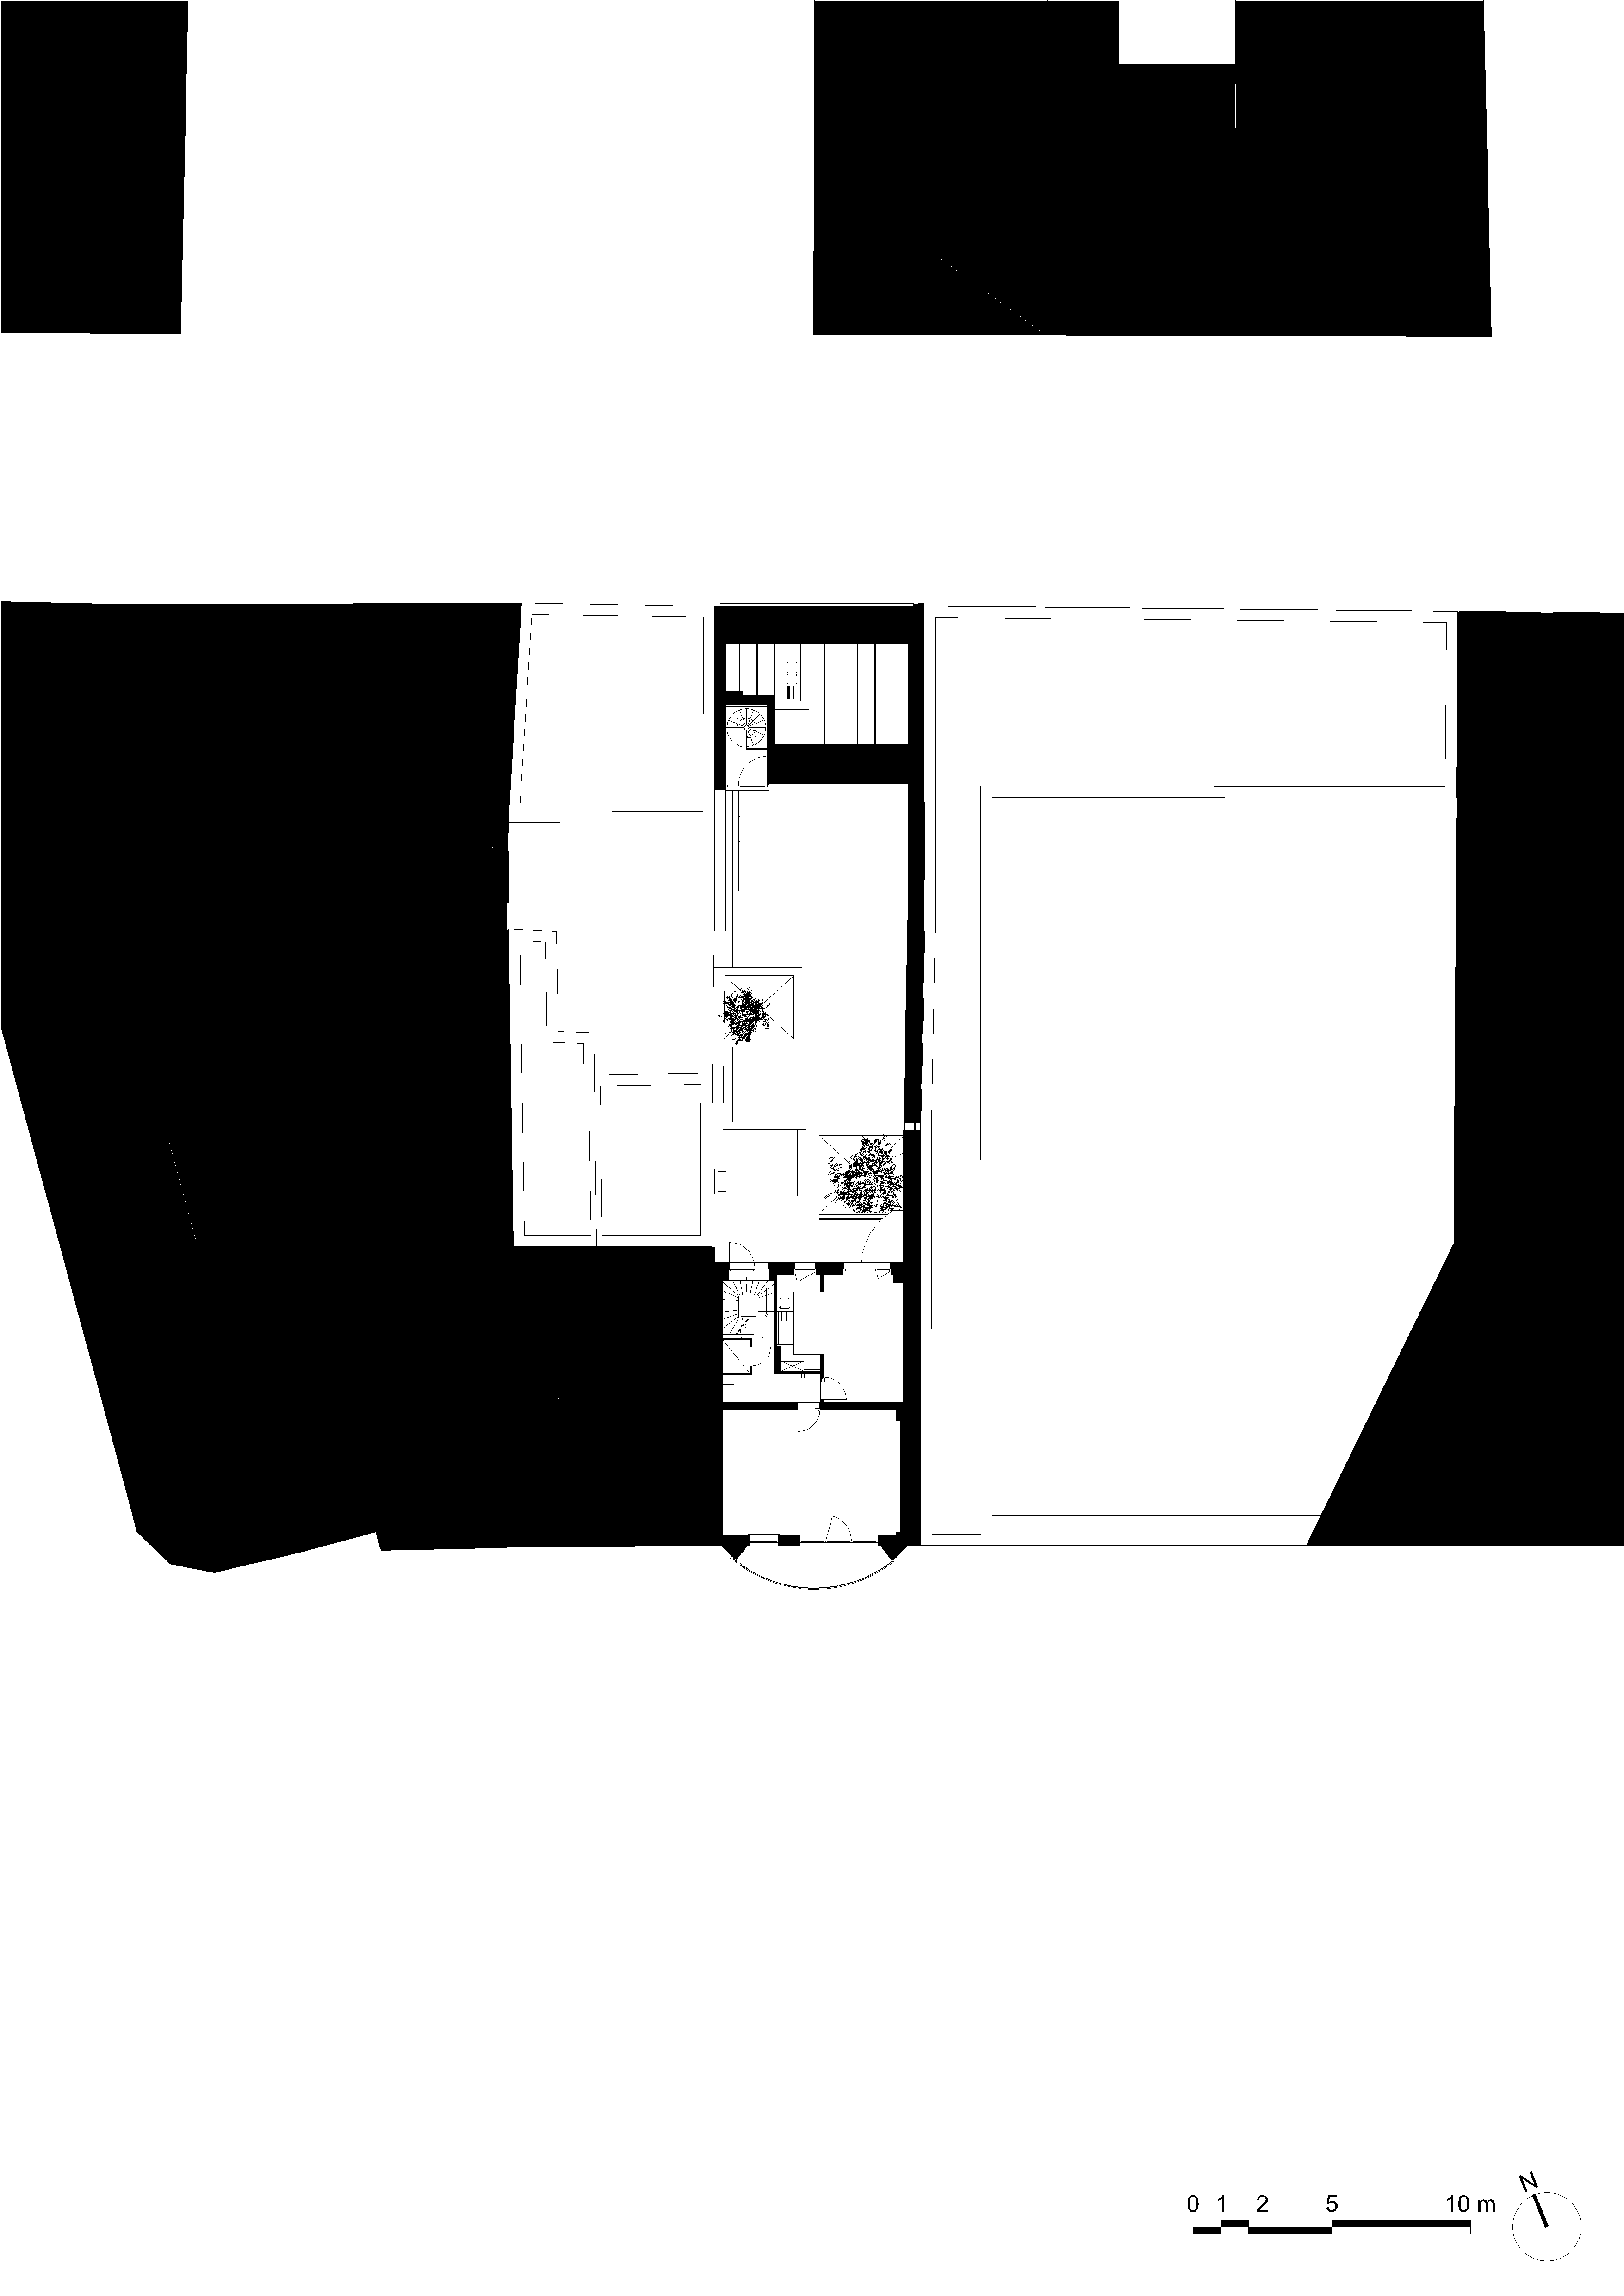 architecture-contemporaine-rénovation-restauration-patrimoine-architectural-Charleroi-Jules-Laurent-bureaux-plan-deuxième-étage